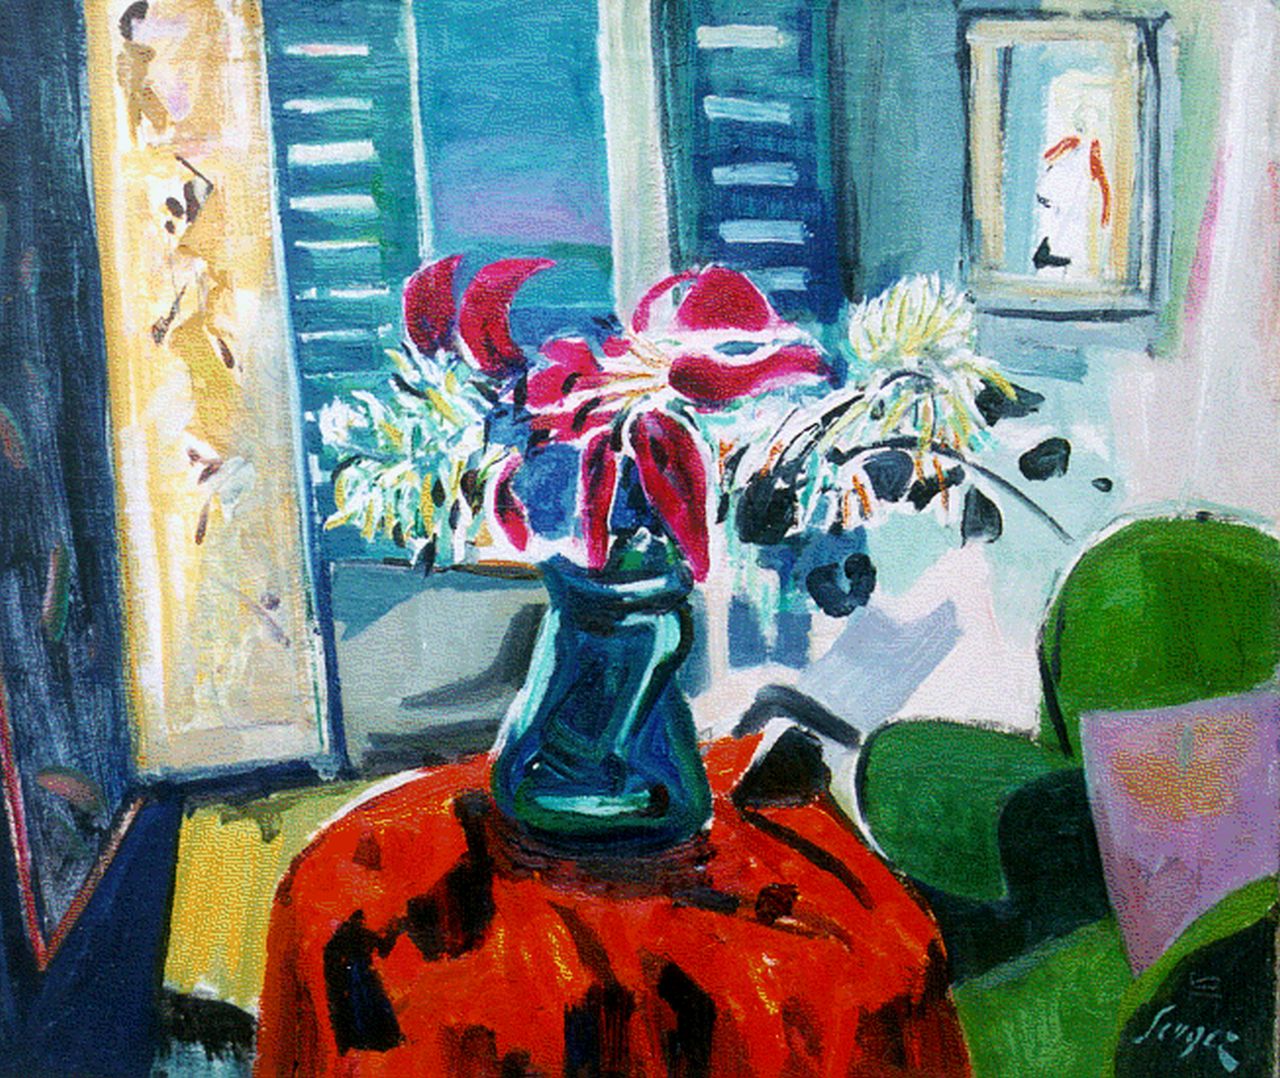 Serger F.B.  | Frederick Bedrich Serger, A flower still life, Öl auf Leinwand 53,7 x 63,8 cm, signed l.r. und painted in 1956